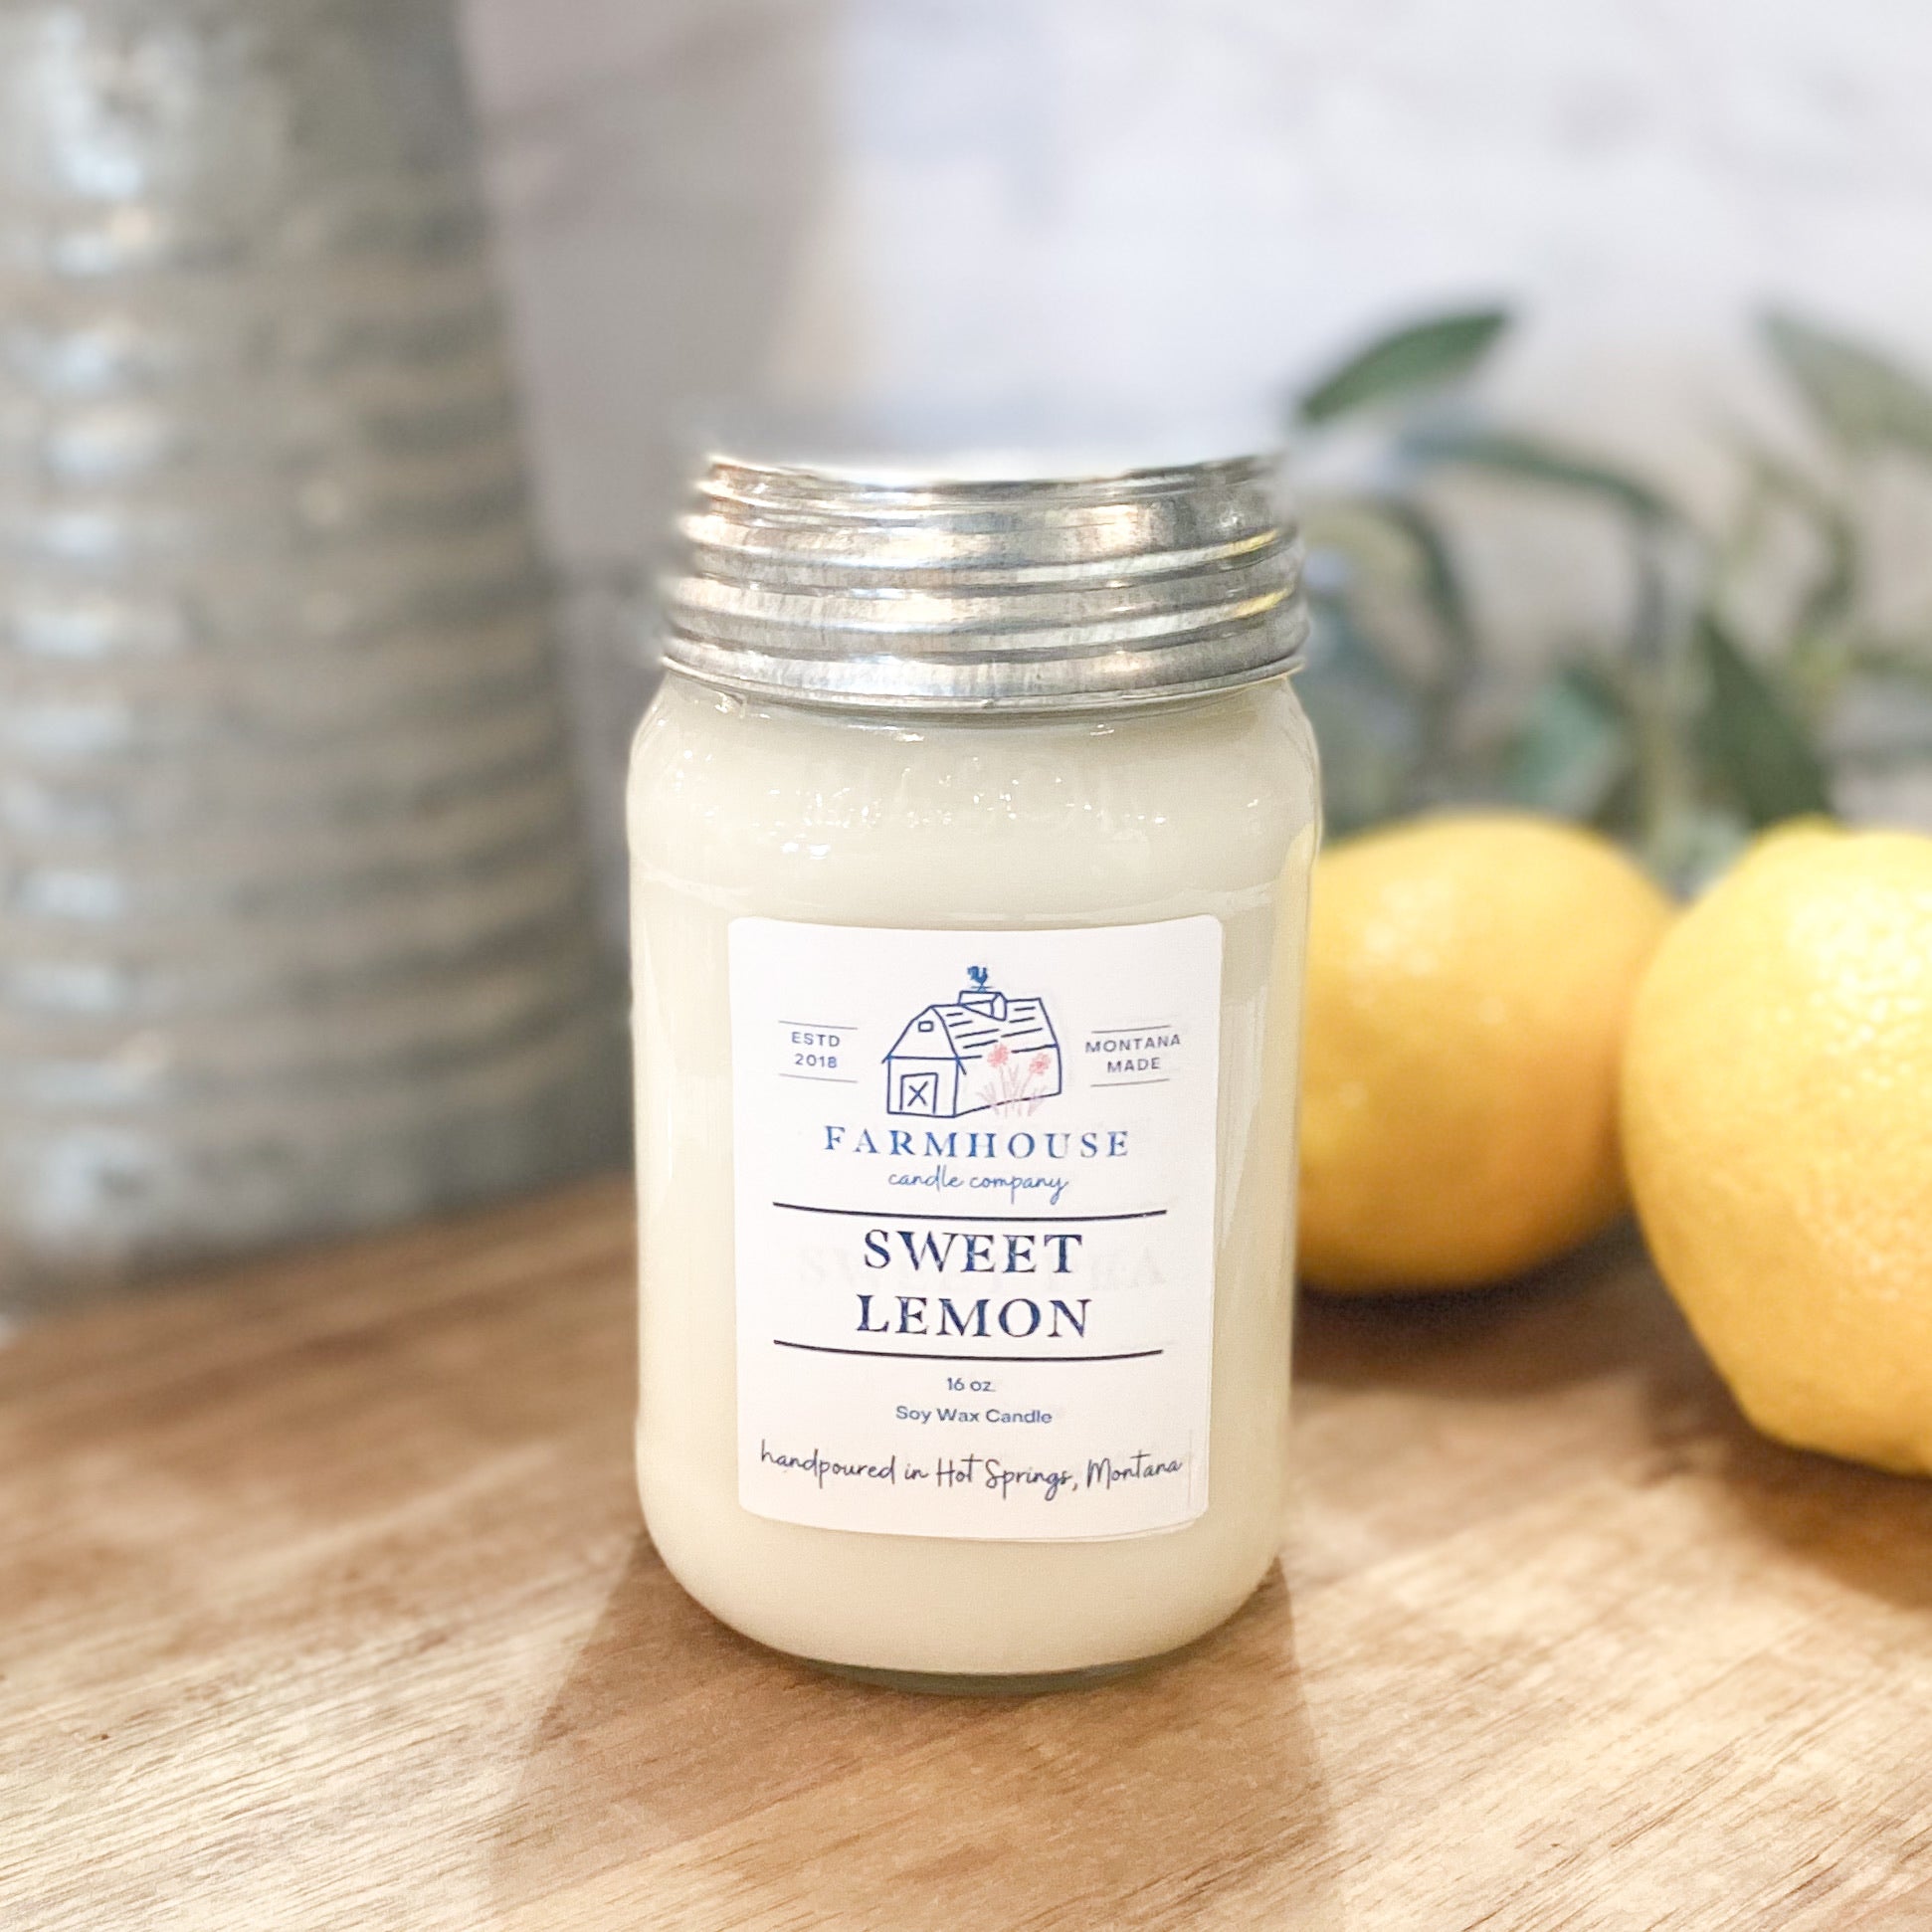 Sweet Lemon 16 oz Mason Jar candle